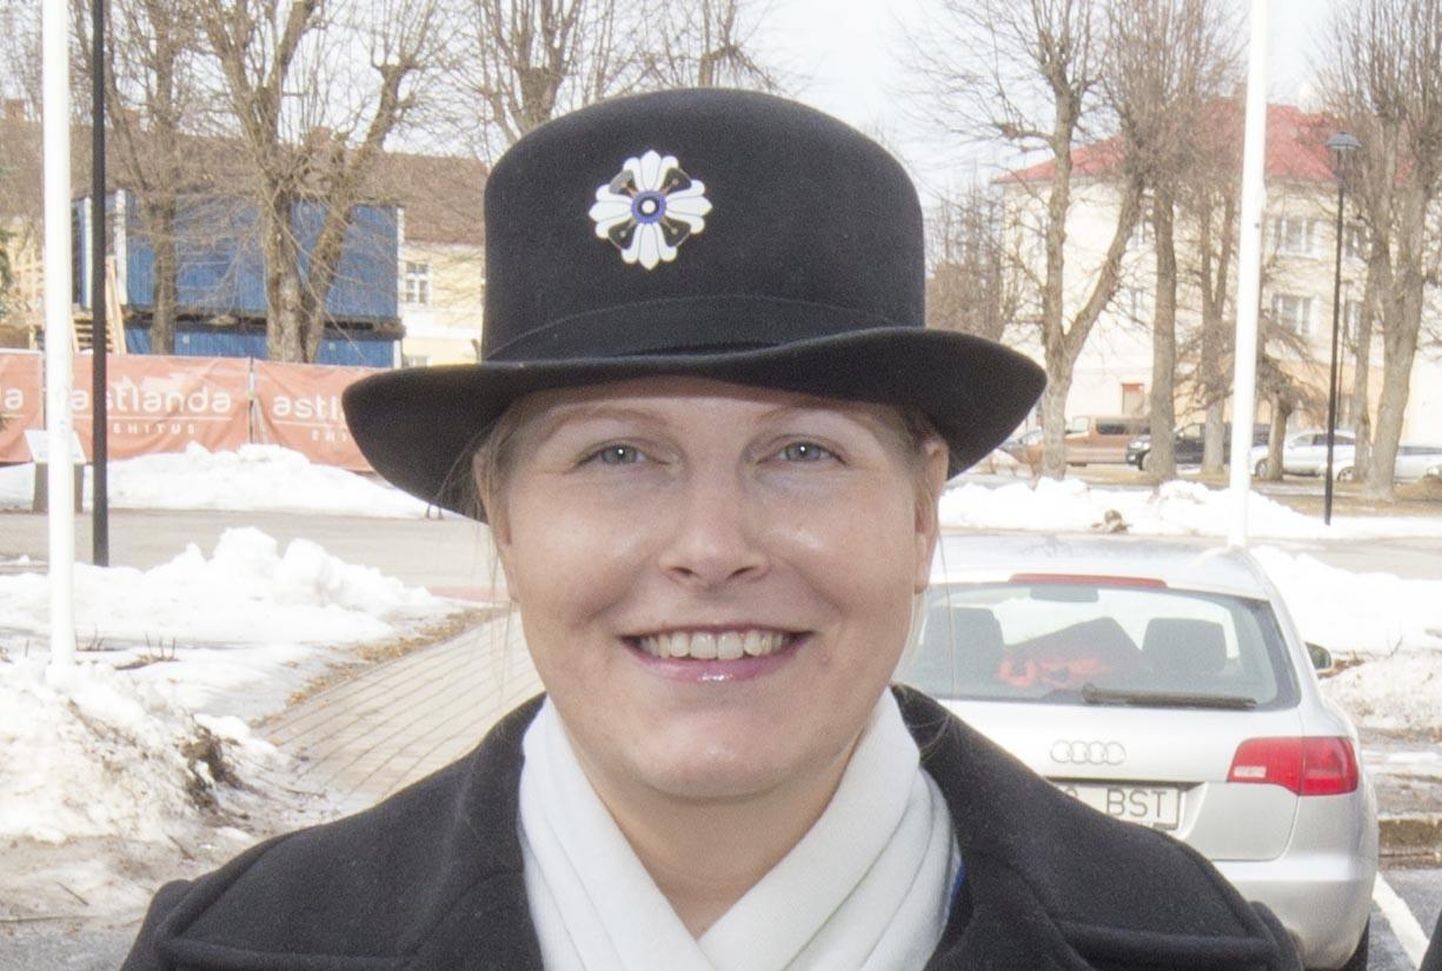 Naiskodukaitse Sakala ringkonna esinaine Jane Koitlepp tegutseb rõõmuga Eesti elu parandamise nimel.